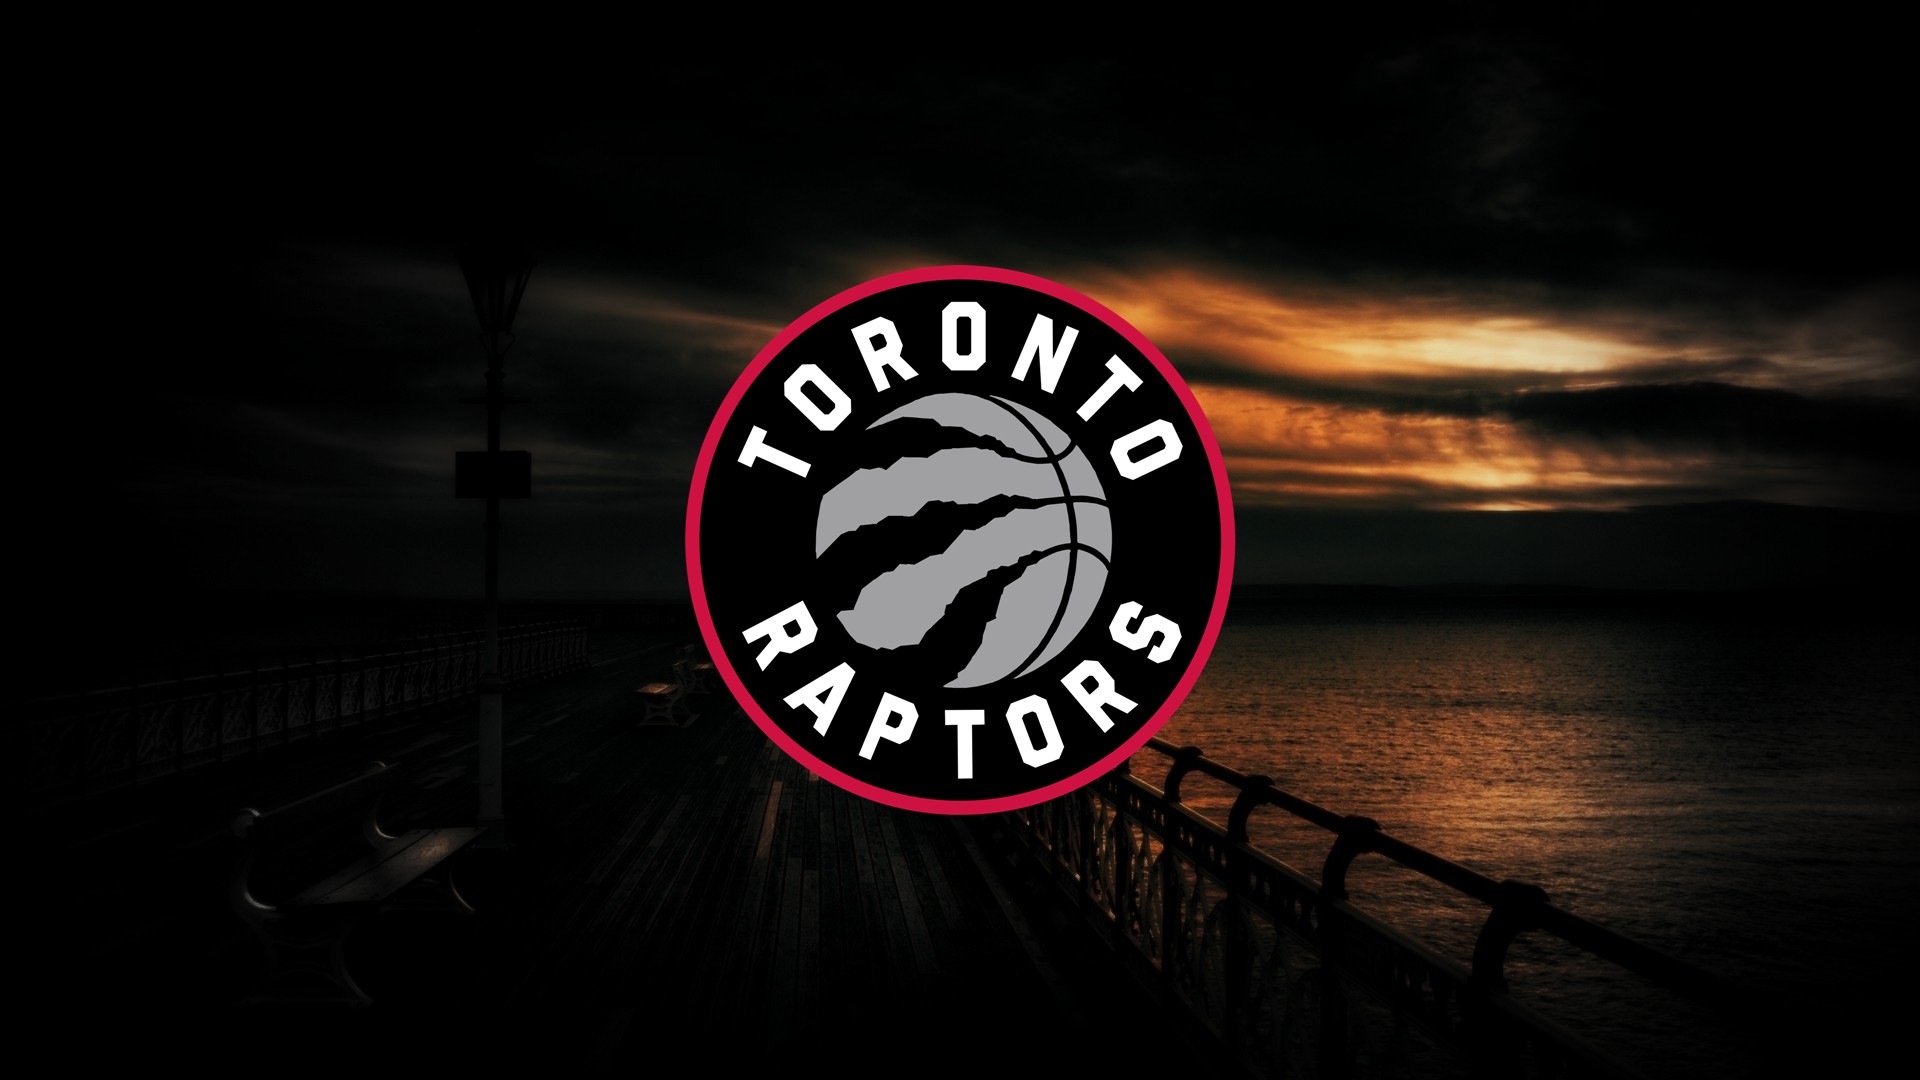 Скачать обои бесплатно Баскетбол, Нба, Виды Спорта, Лого, Торонто Рэпторс картинка на рабочий стол ПК